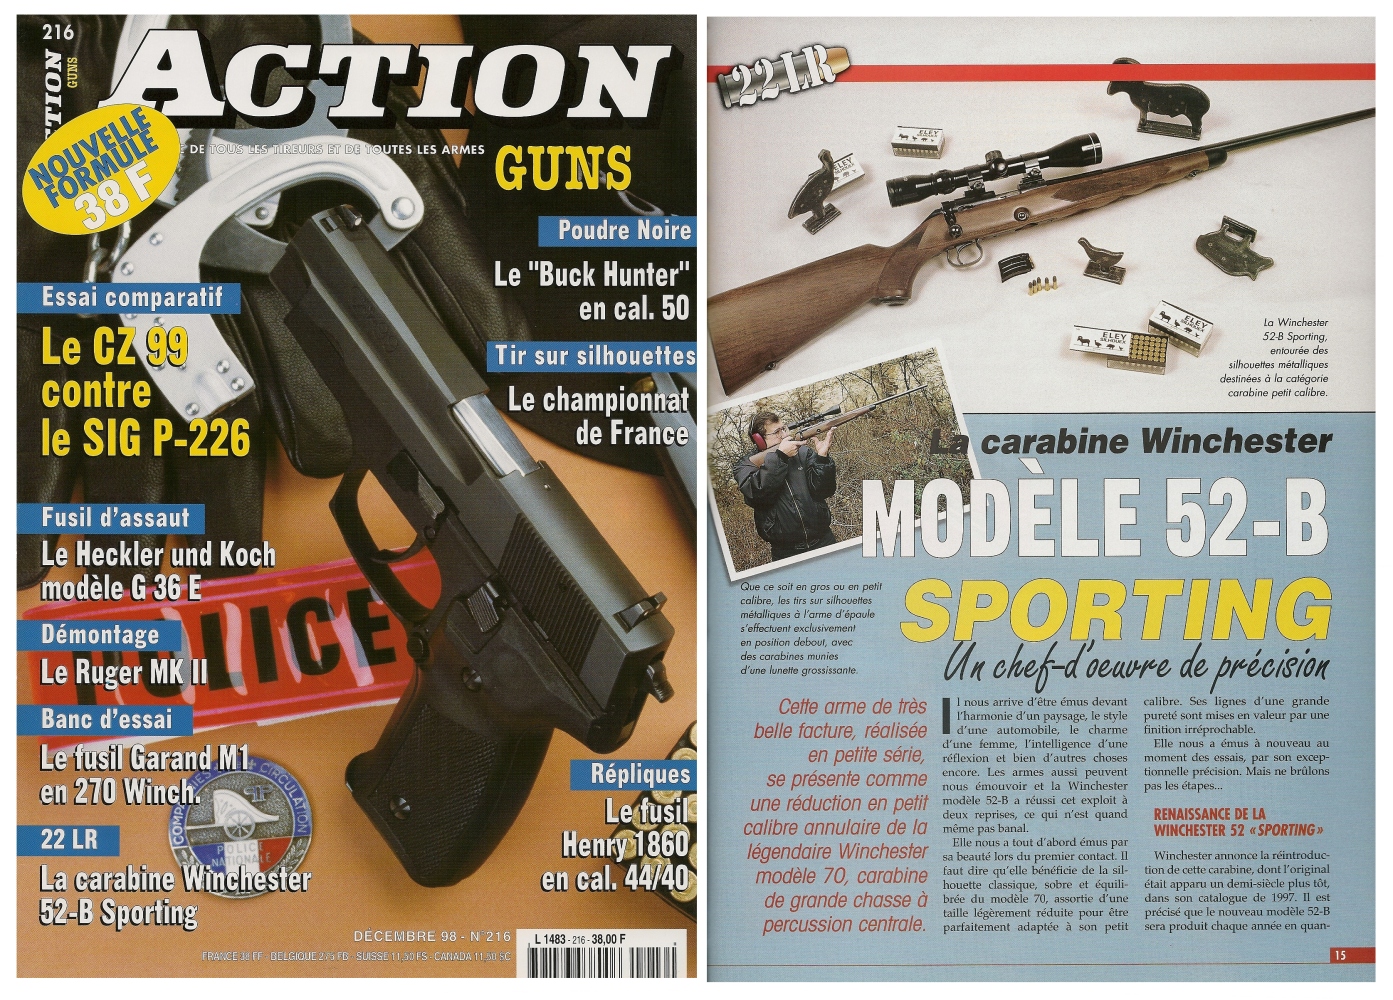 Le banc d’essai de la carabine Winchester modèle 52-B Sporting a été publié sur 5 pages dans le magazine Action Guns n°216 (décembre 1998). 